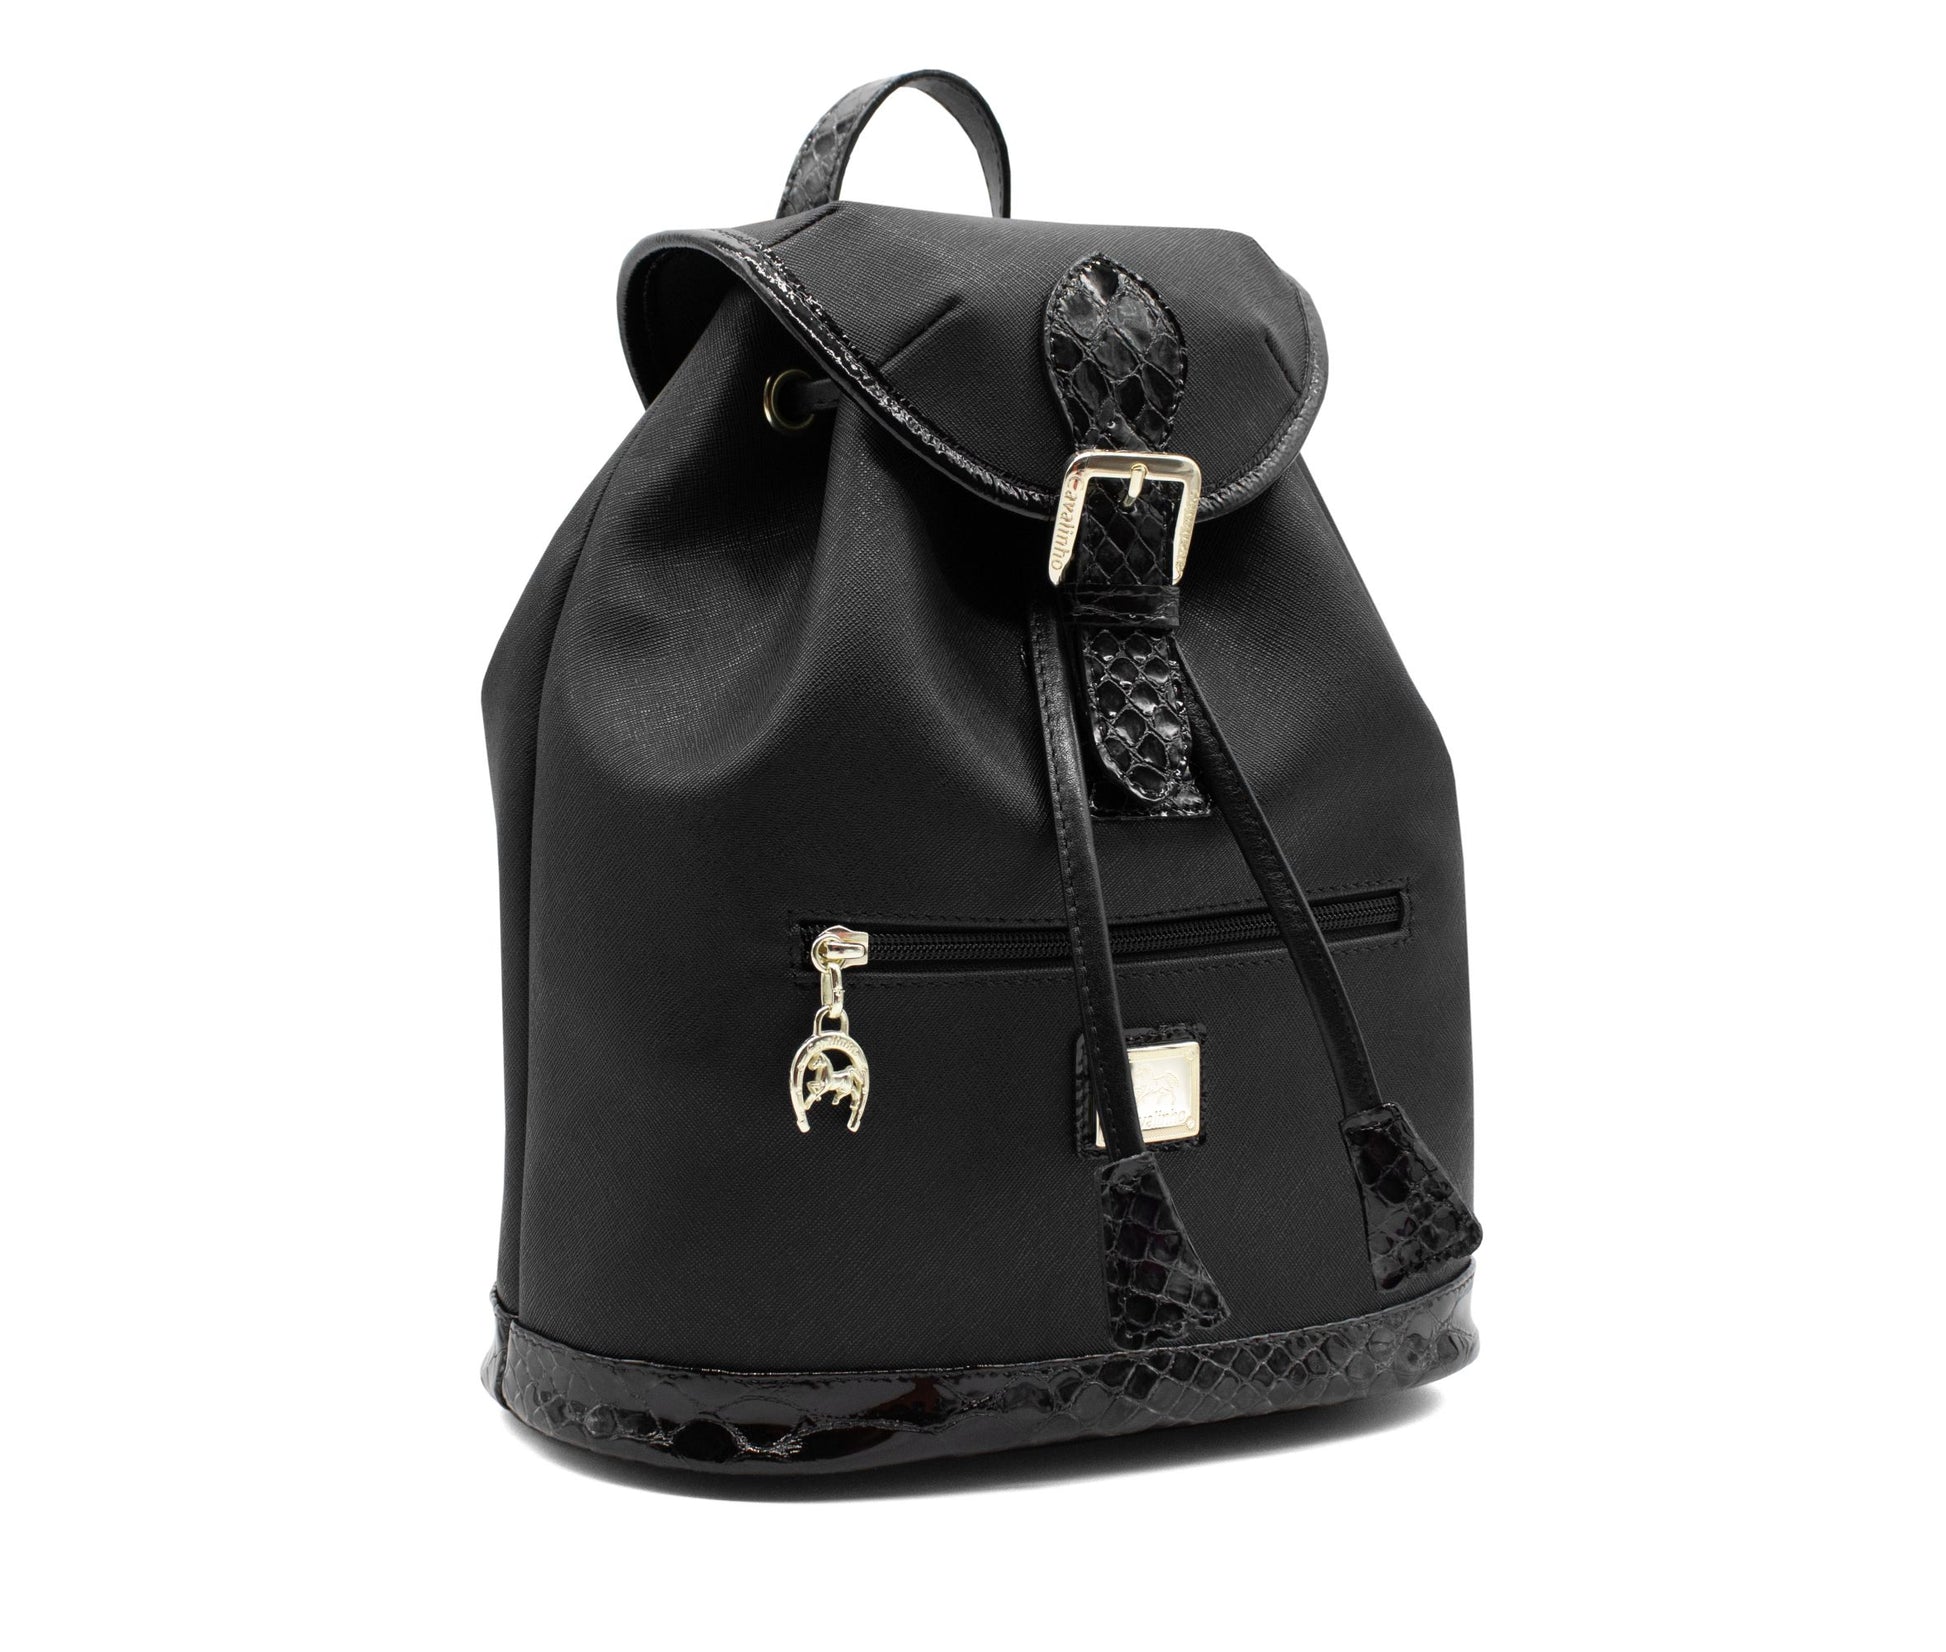 #color_ Black | Cavalinho Cherry Blossom Backpack - Black - 18810495.01_2